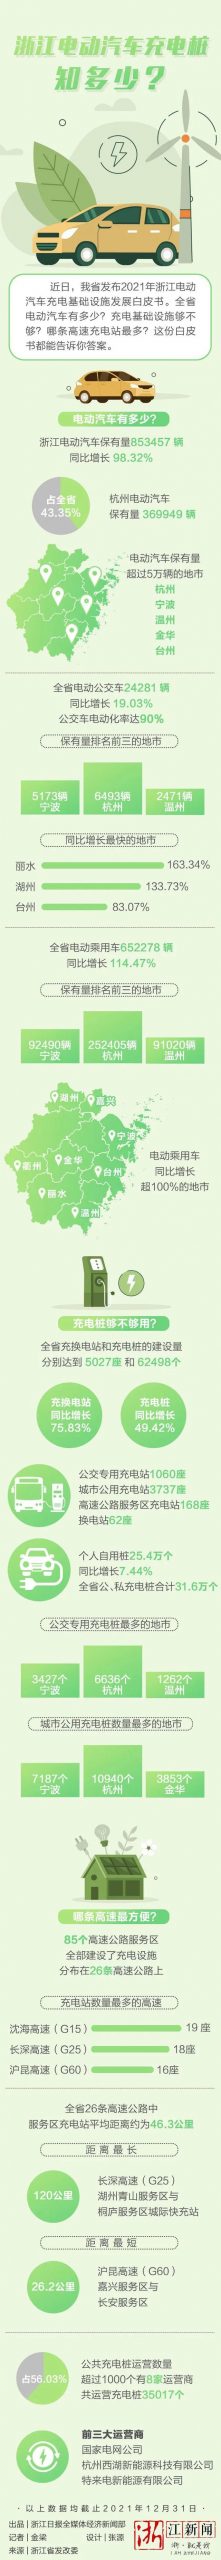 一圖讀懂浙江省電動汽車充電基礎設施發展白皮書?